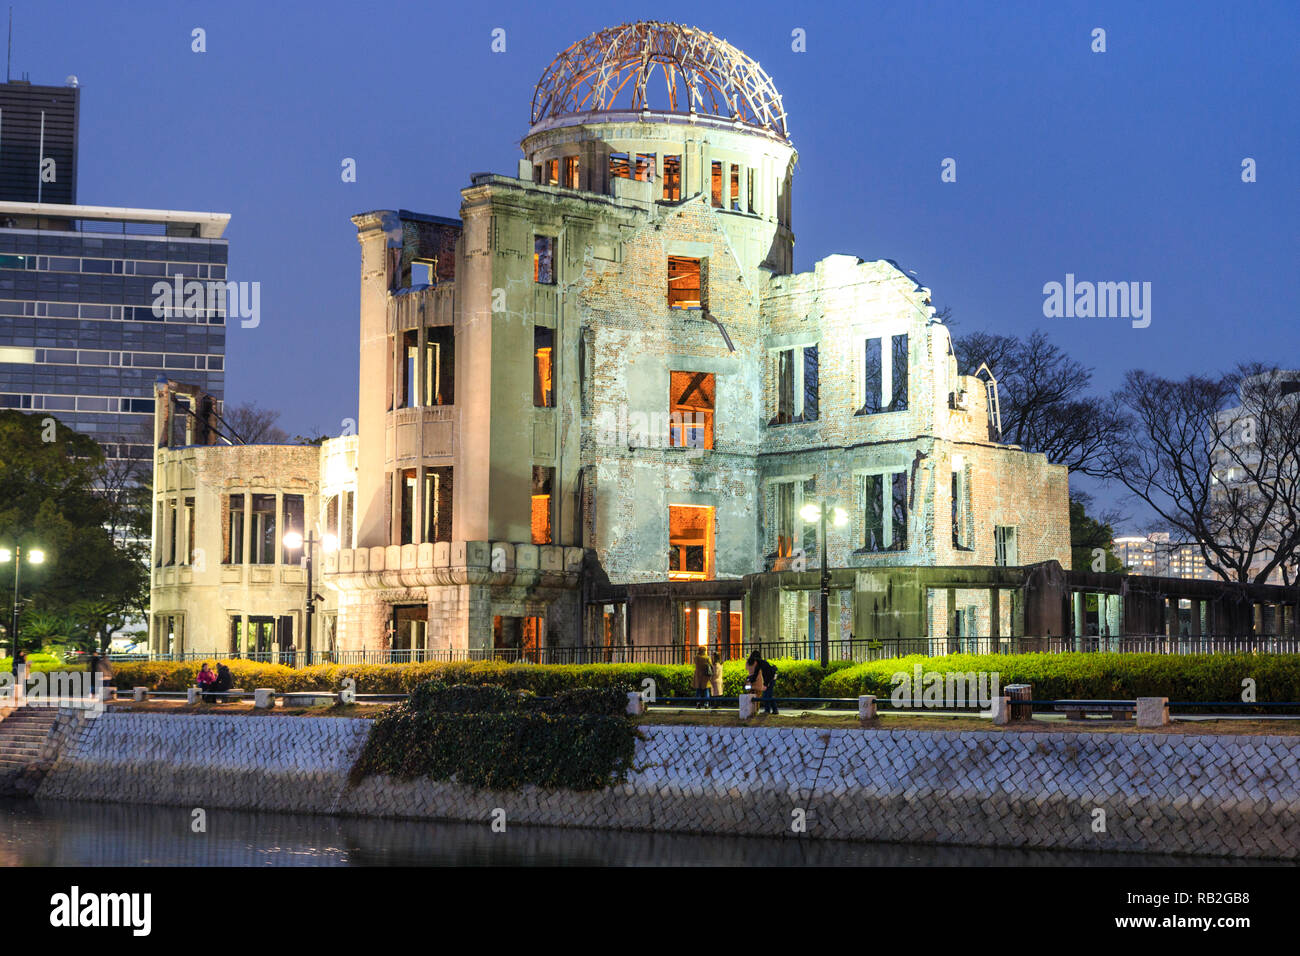 Hiroshima Peace Memorial, la Cupola della Bomba Atomica, Bomba a cupola, Genbaku Dome, di notte con il fiume che riflette la costruzione e luci. Foto Stock